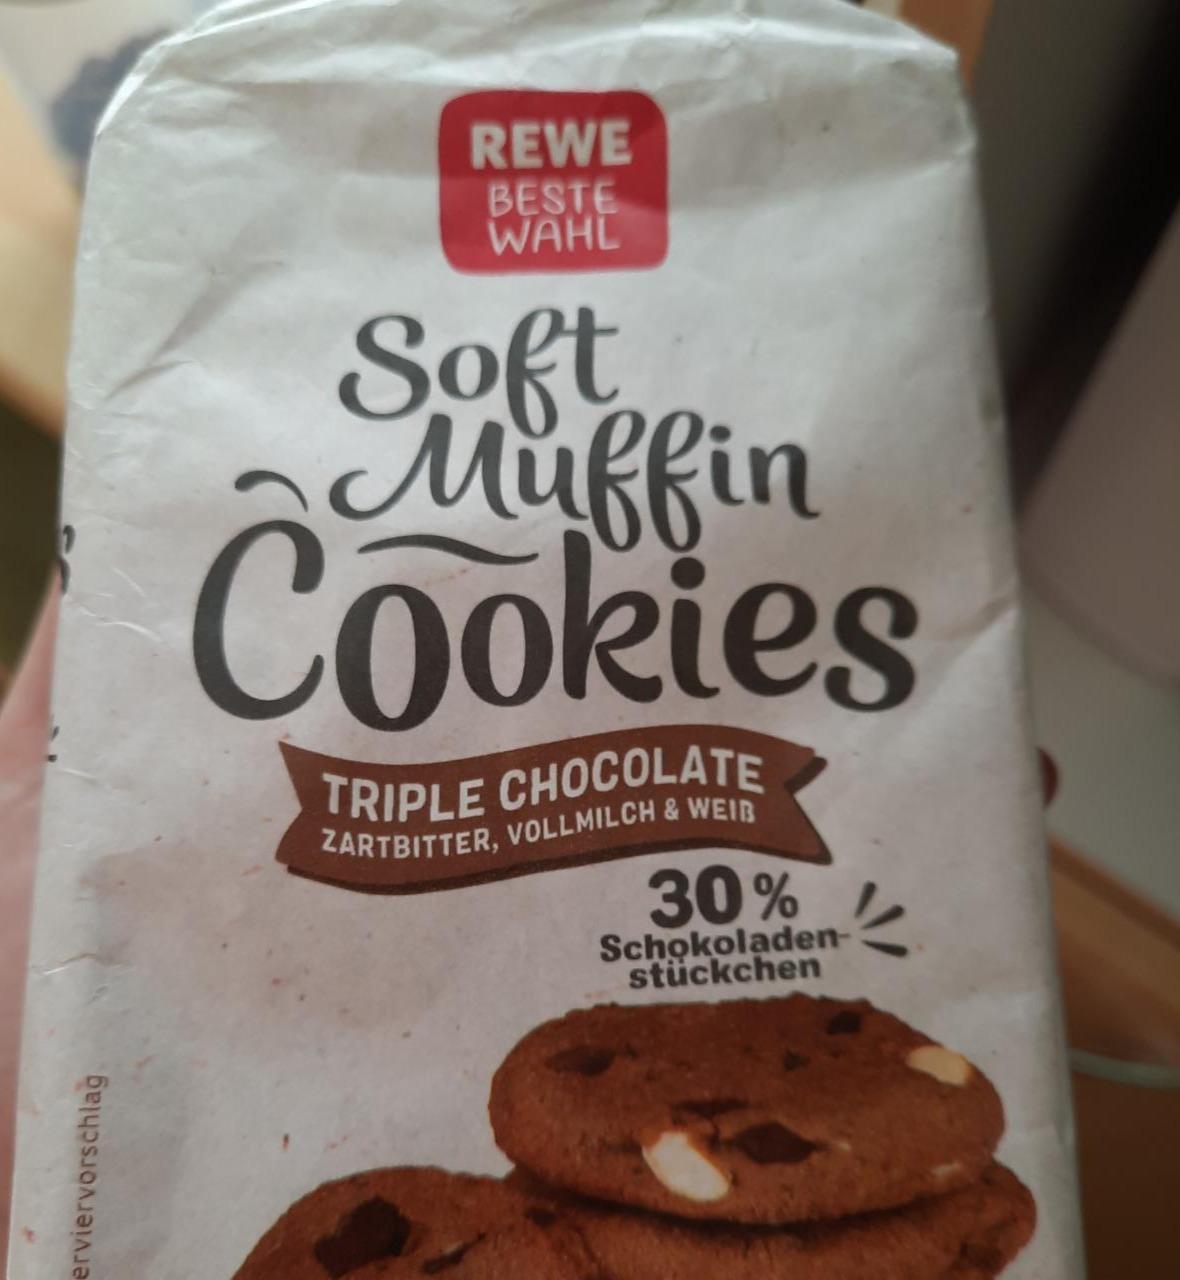 Fotografie - Soft Muffin Cookies Triple Chocolate REWE Beste Wahl